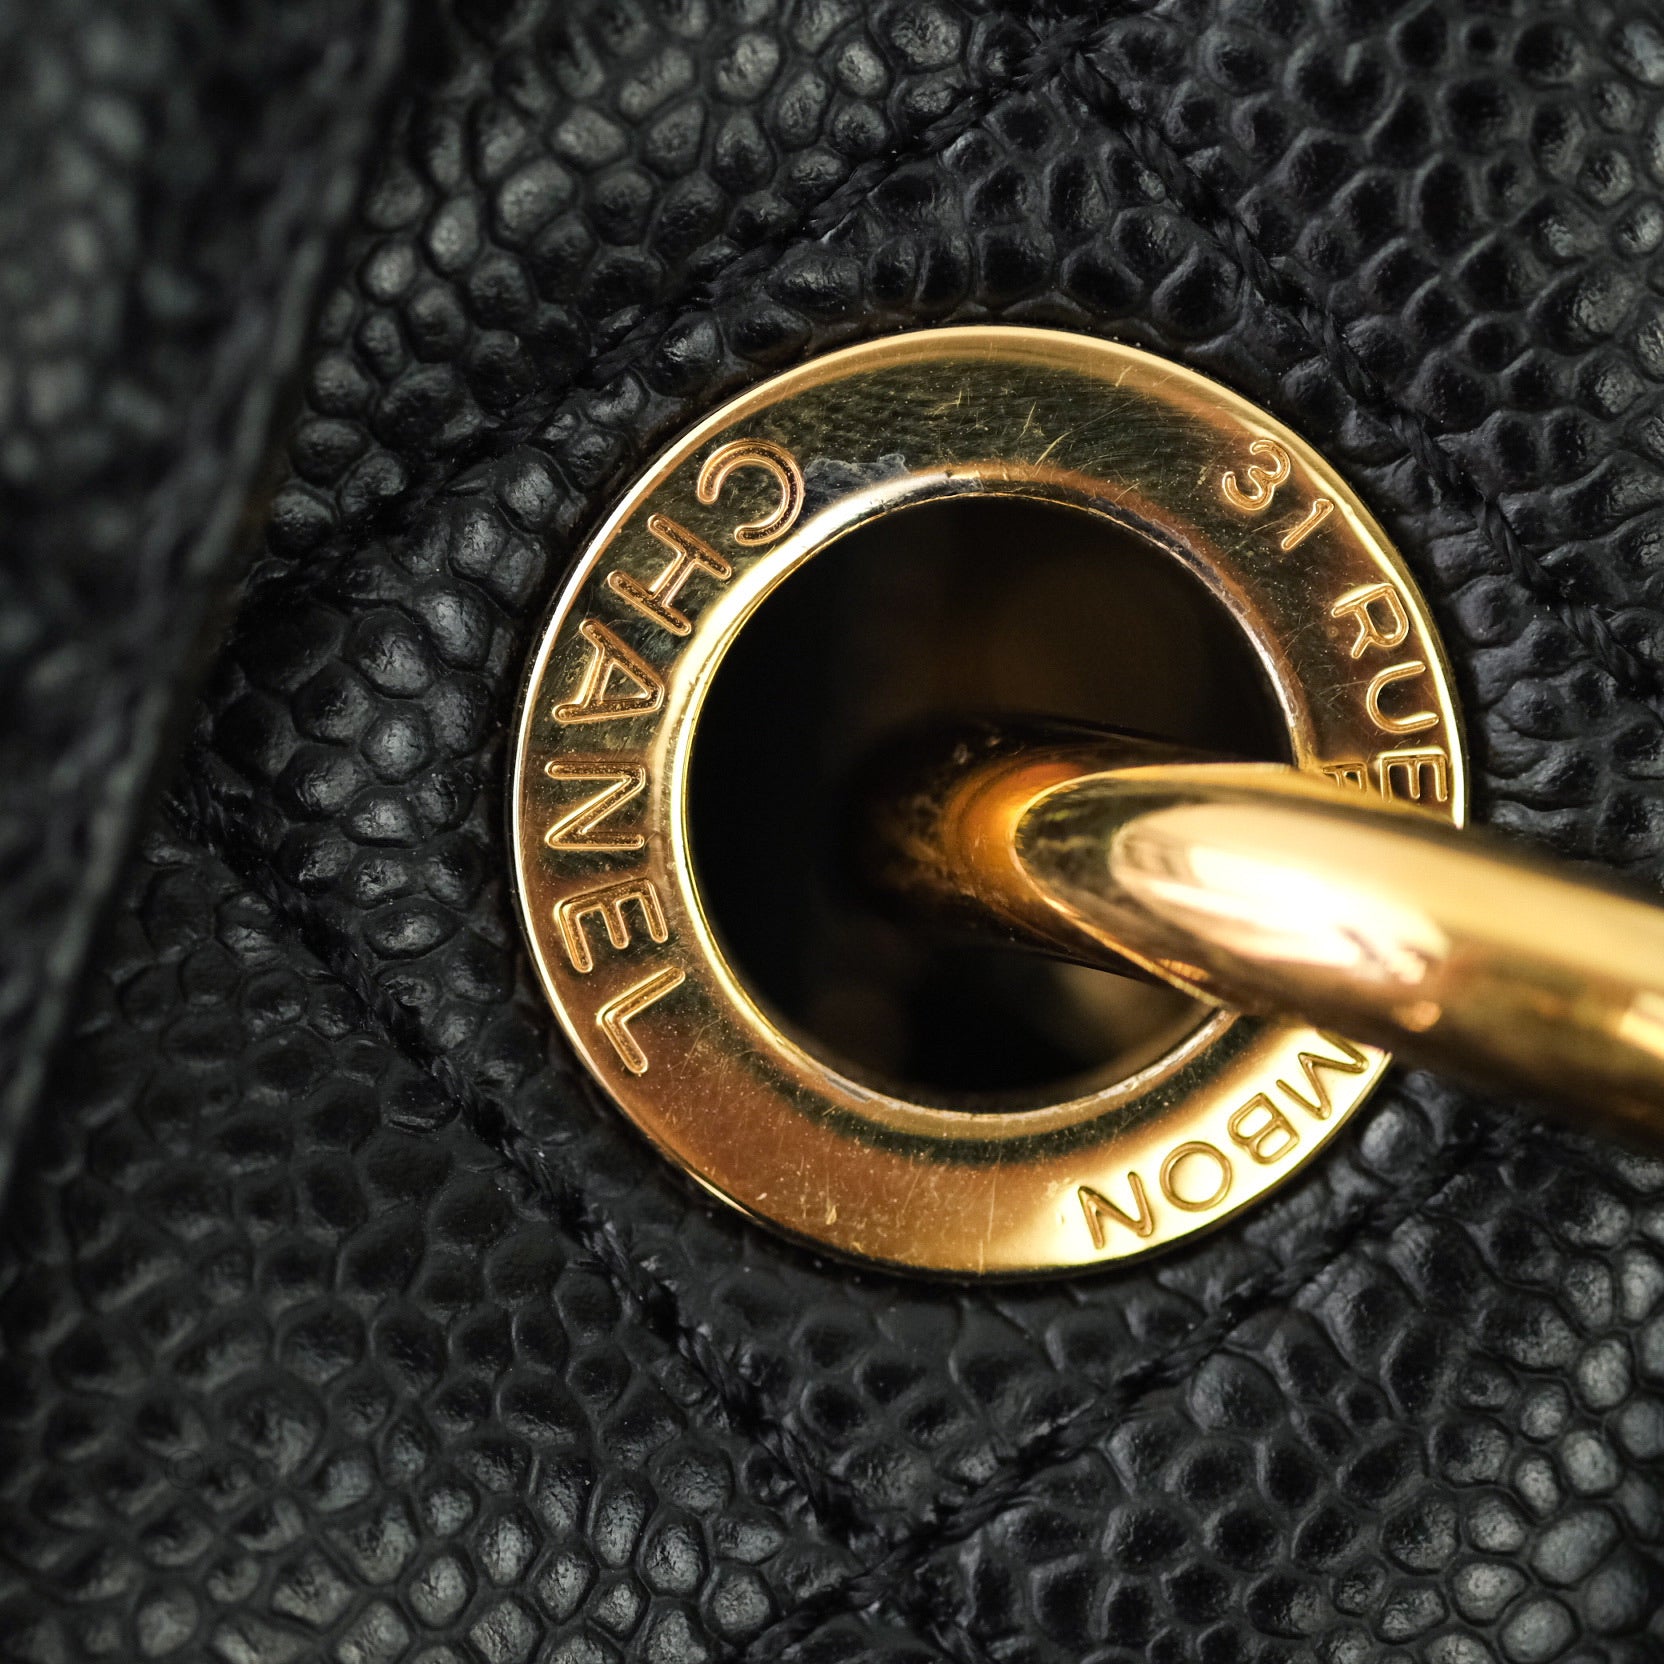 Chanel Caviar Grand Shopping Tote GST Black Gold Hardware – Coco